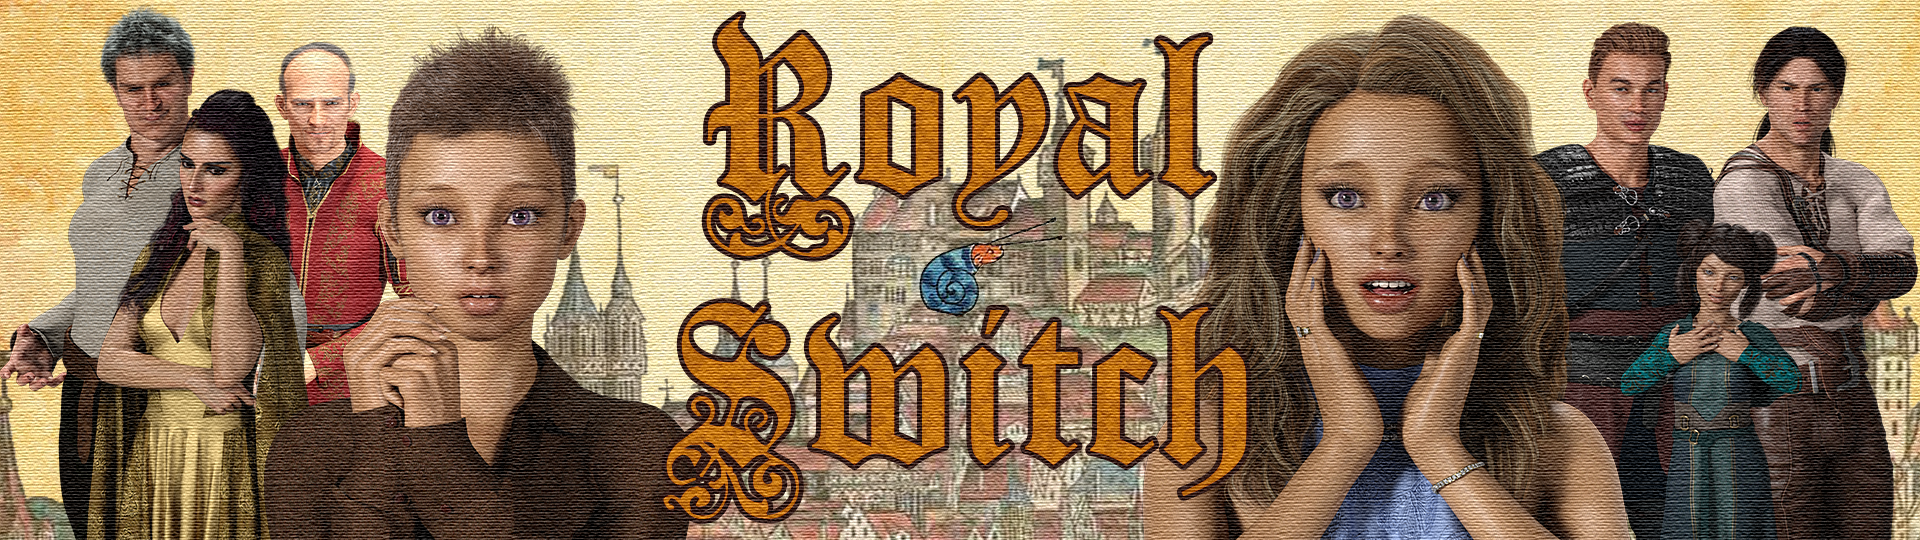 Royal Switch